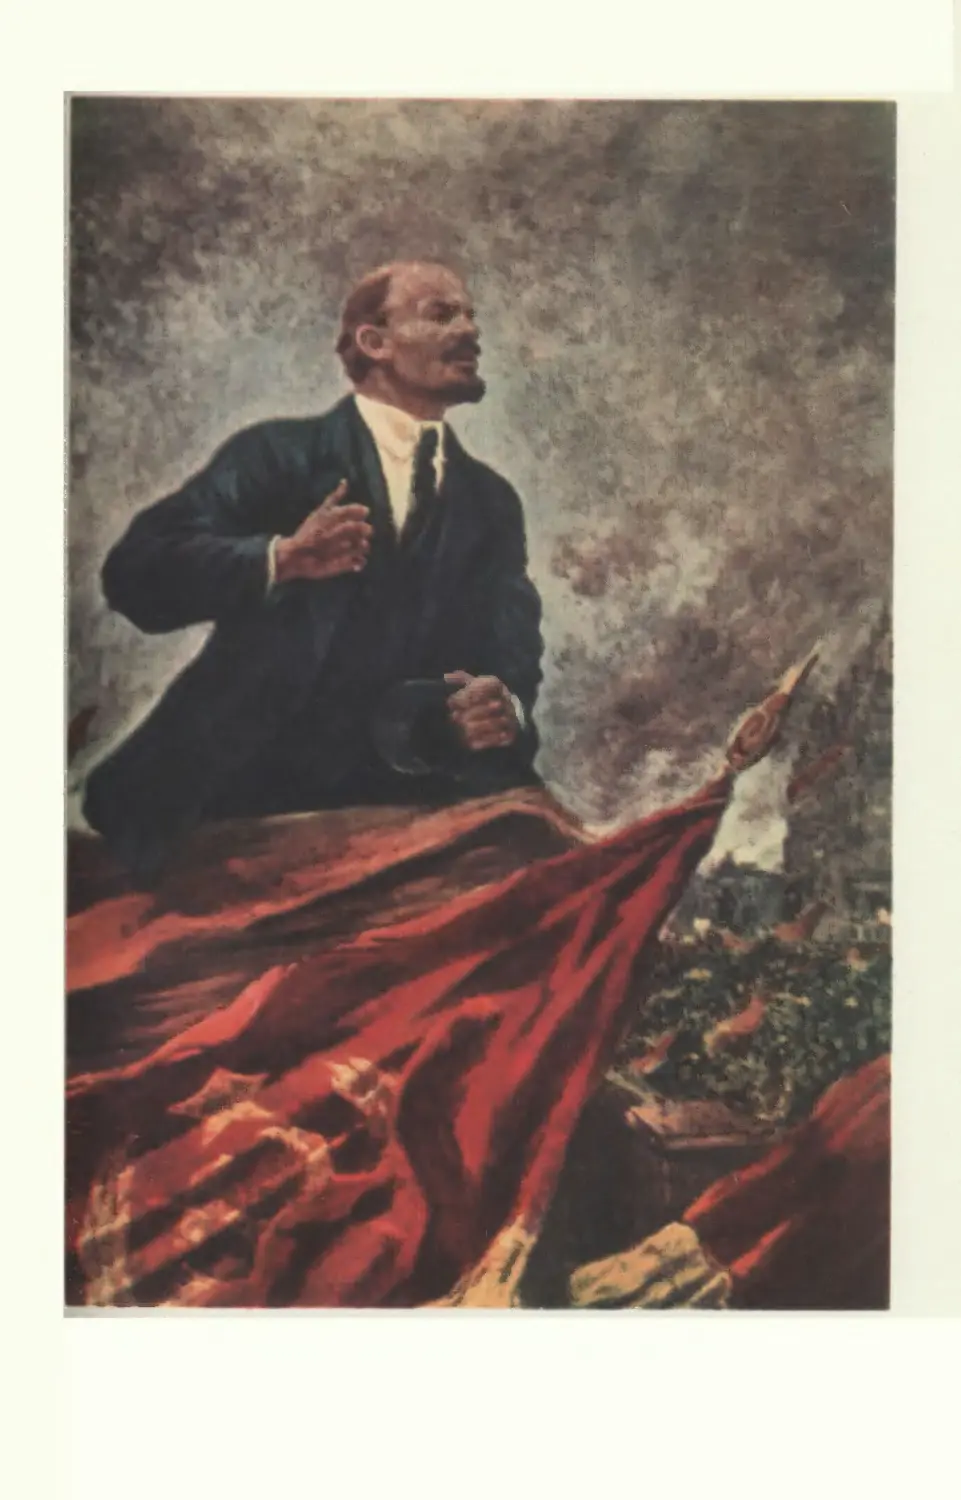 Иллюстрации
А. Герасимов В.И. Ленин на трибуне. 1930